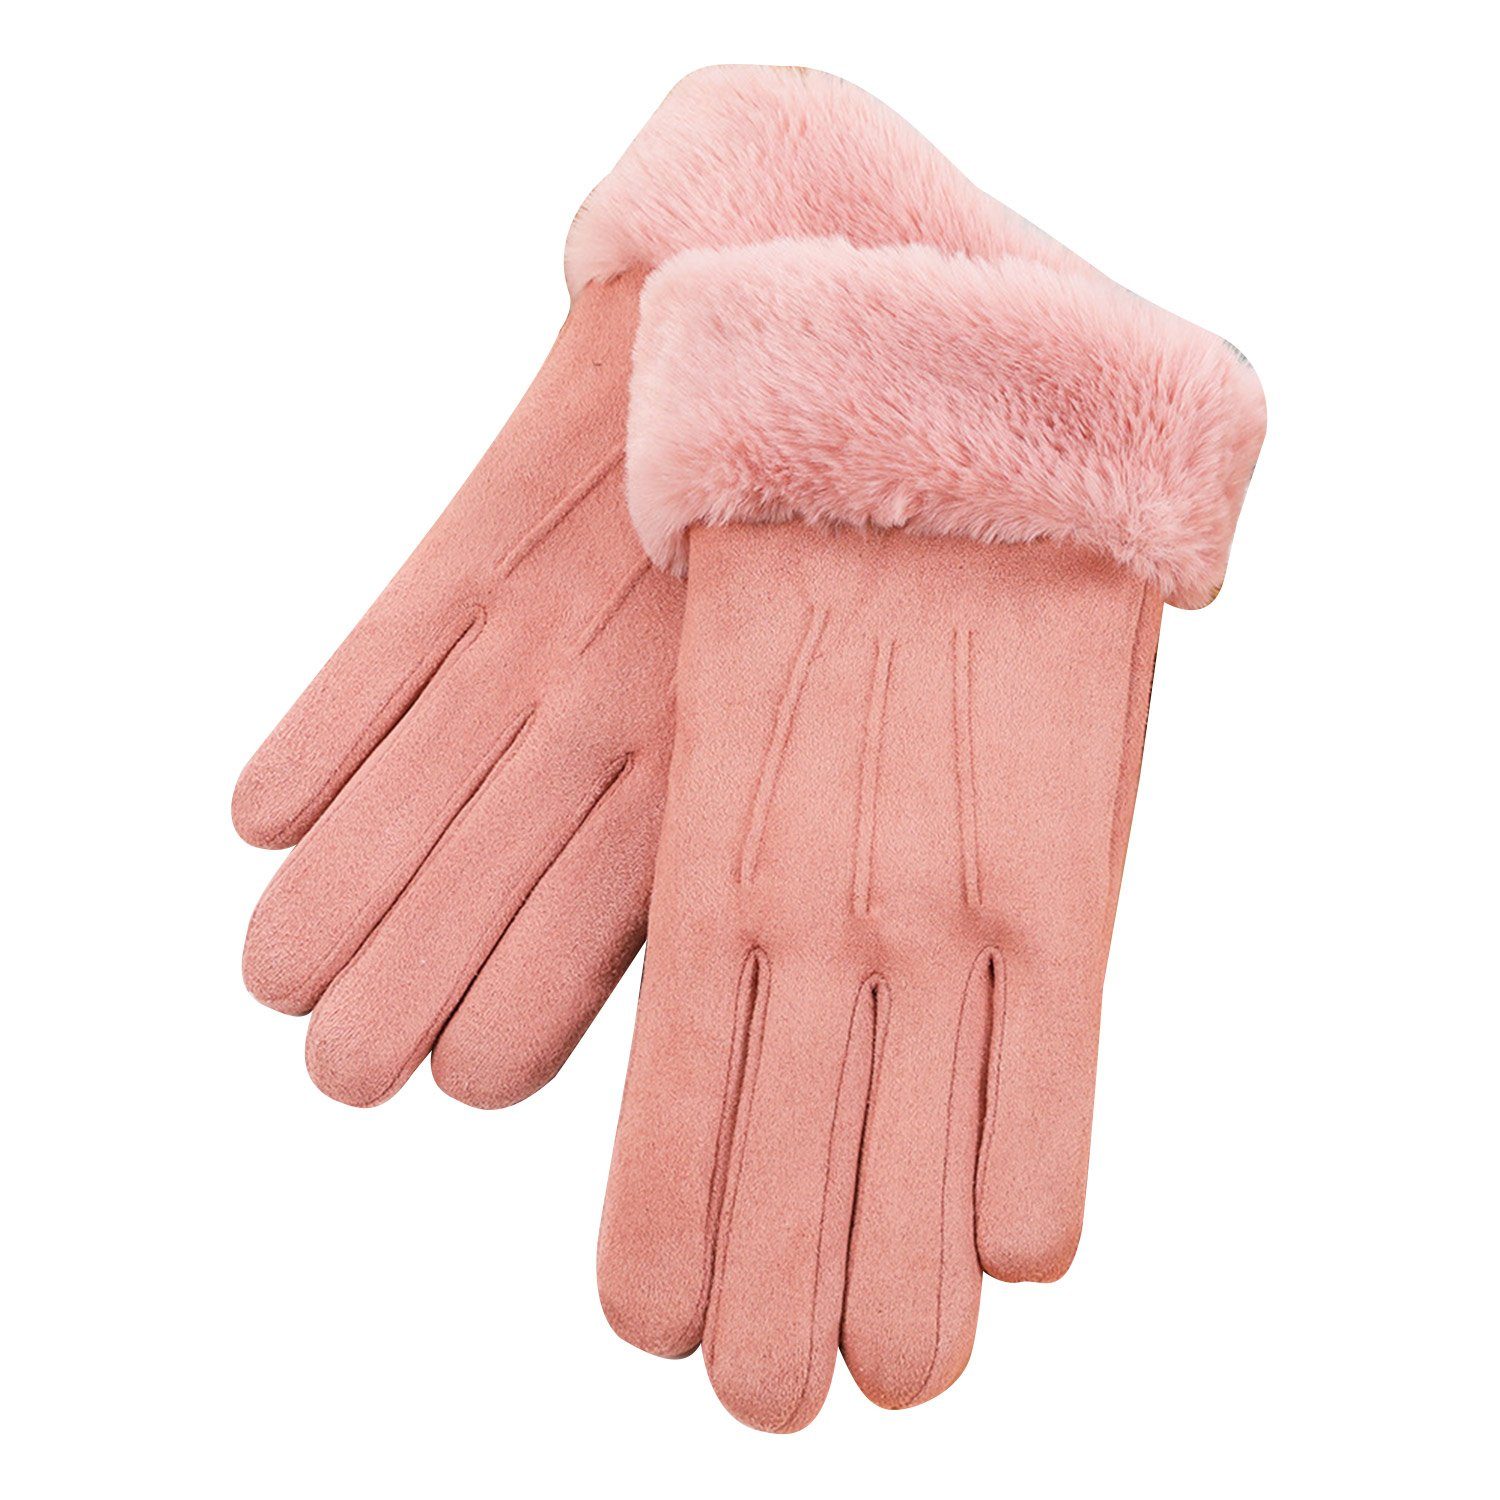 Mode liefern MAGICSHE Fleecehandschuhe Damen Winter Warme Touchscreen Handschuhe Rosa